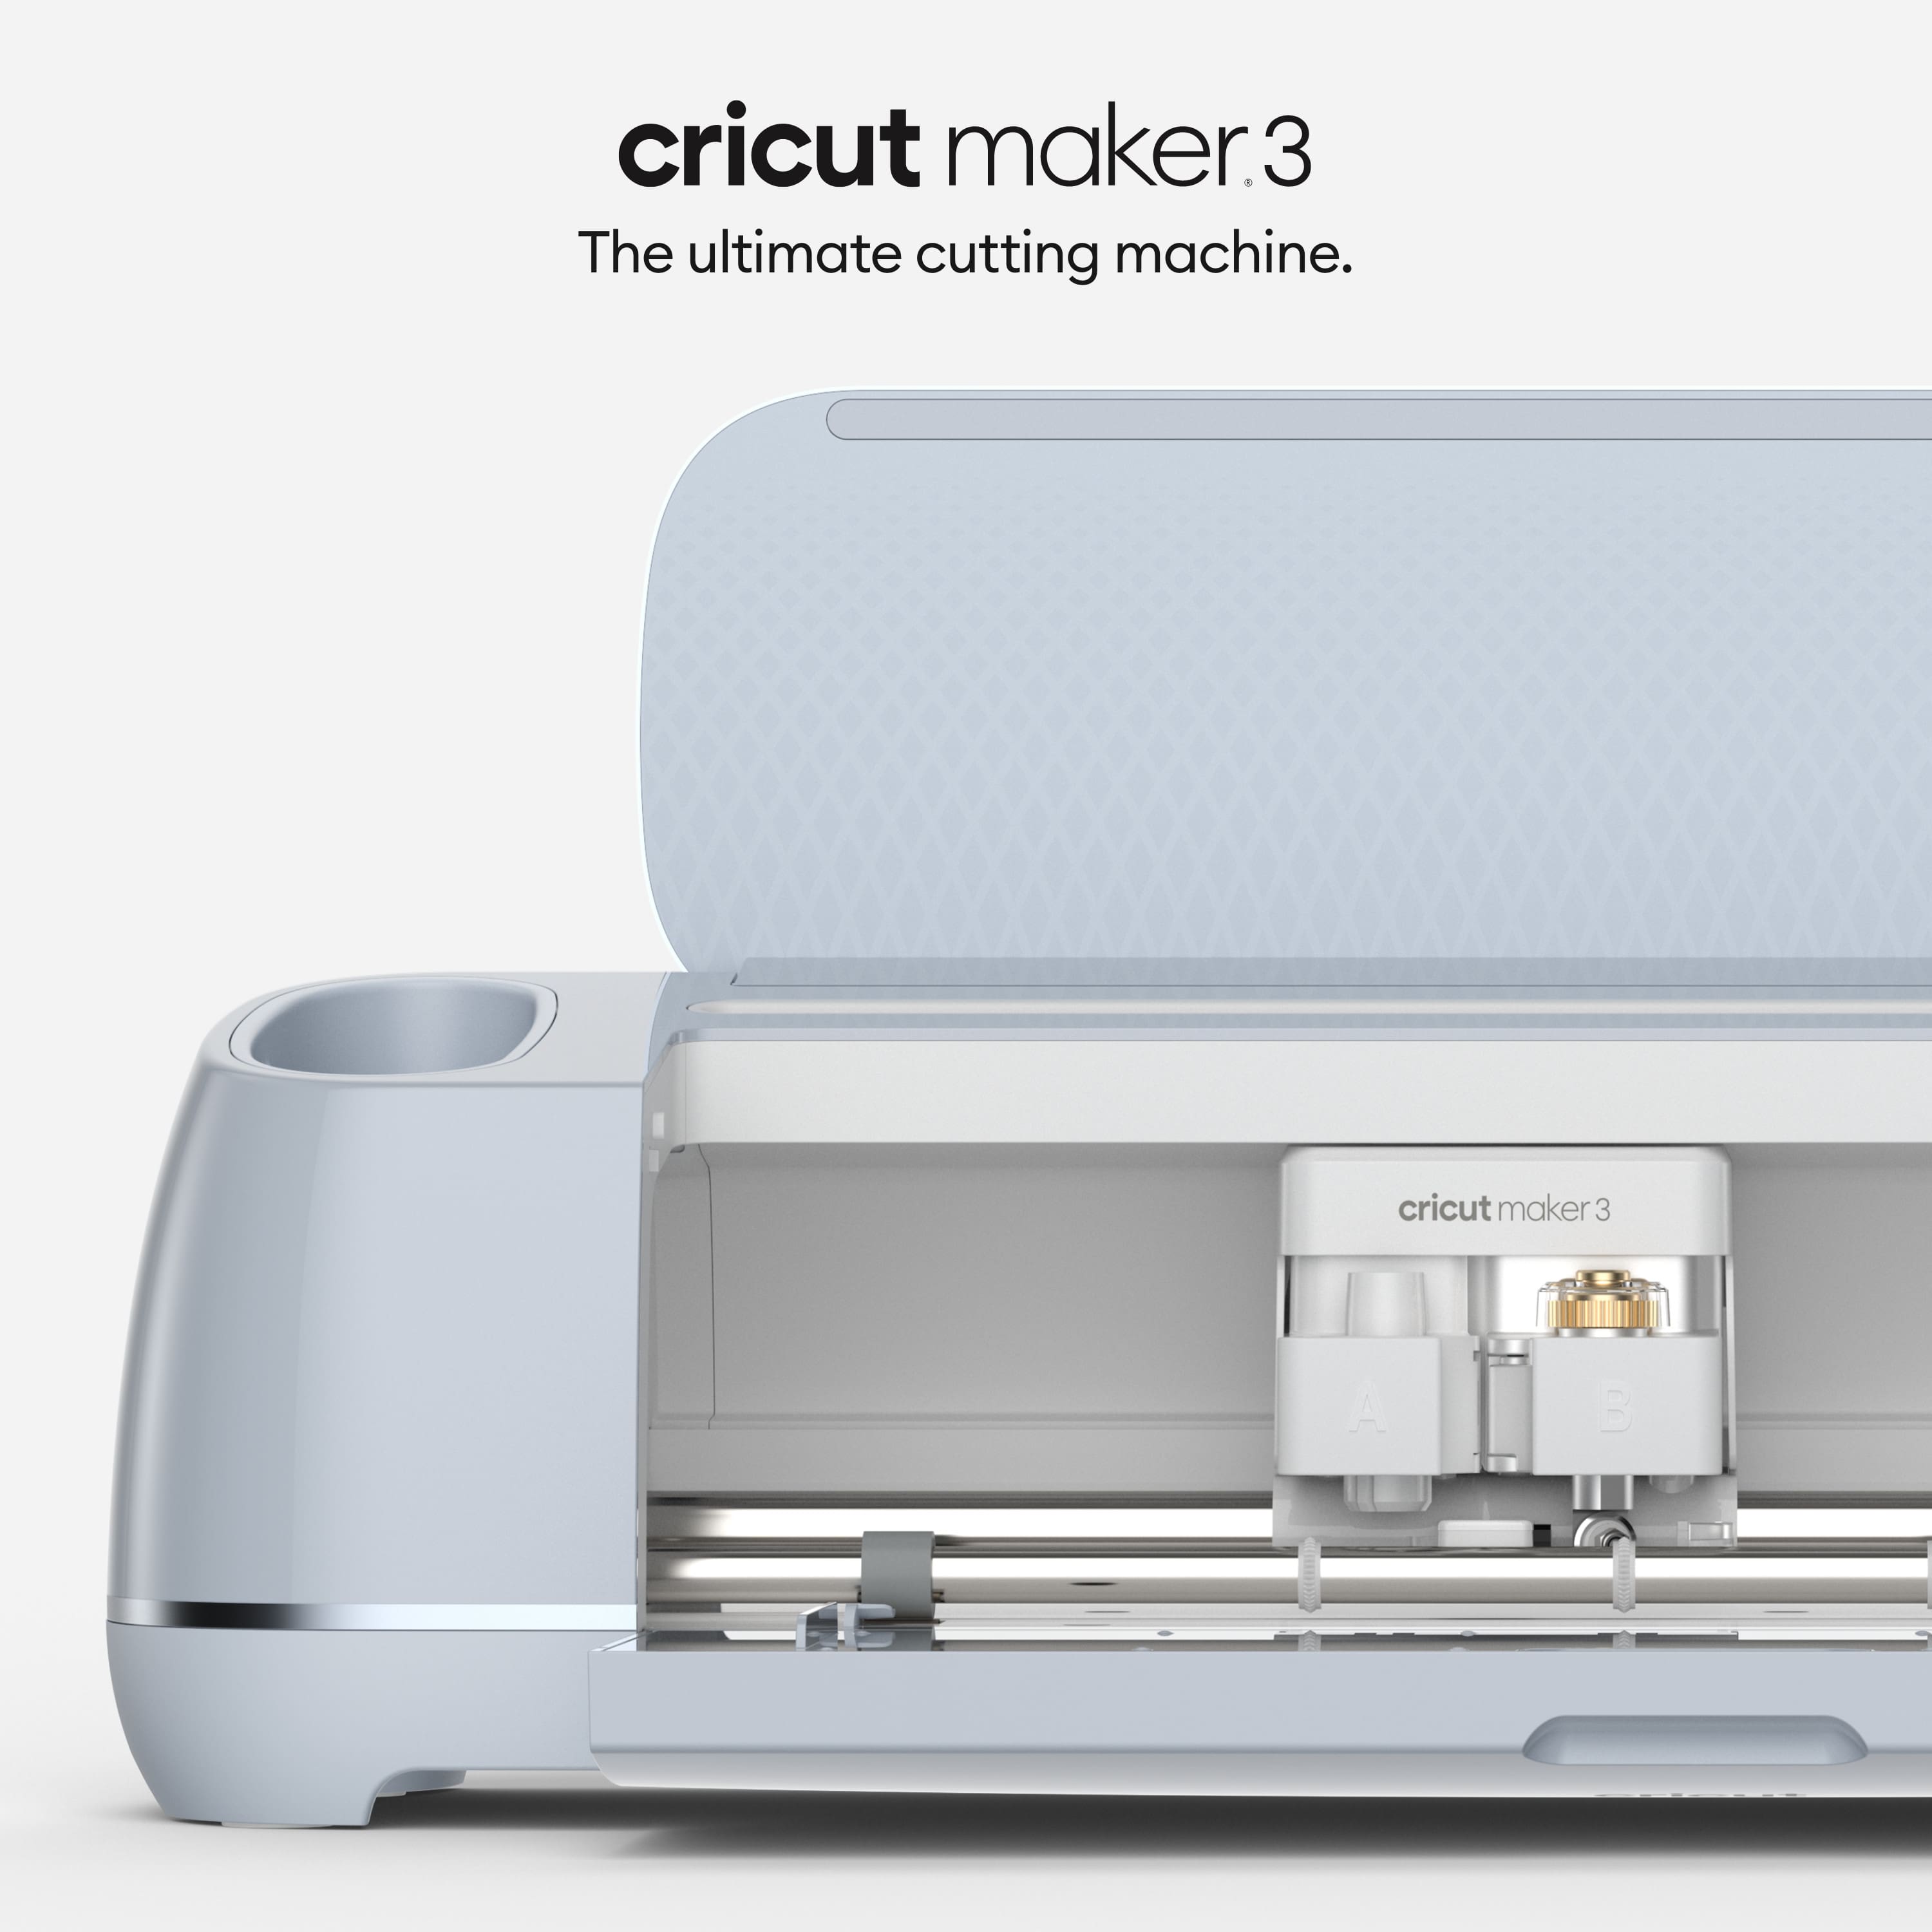 REVIEW: Cricut Maker 3 Smart Cutting Machine + Photos